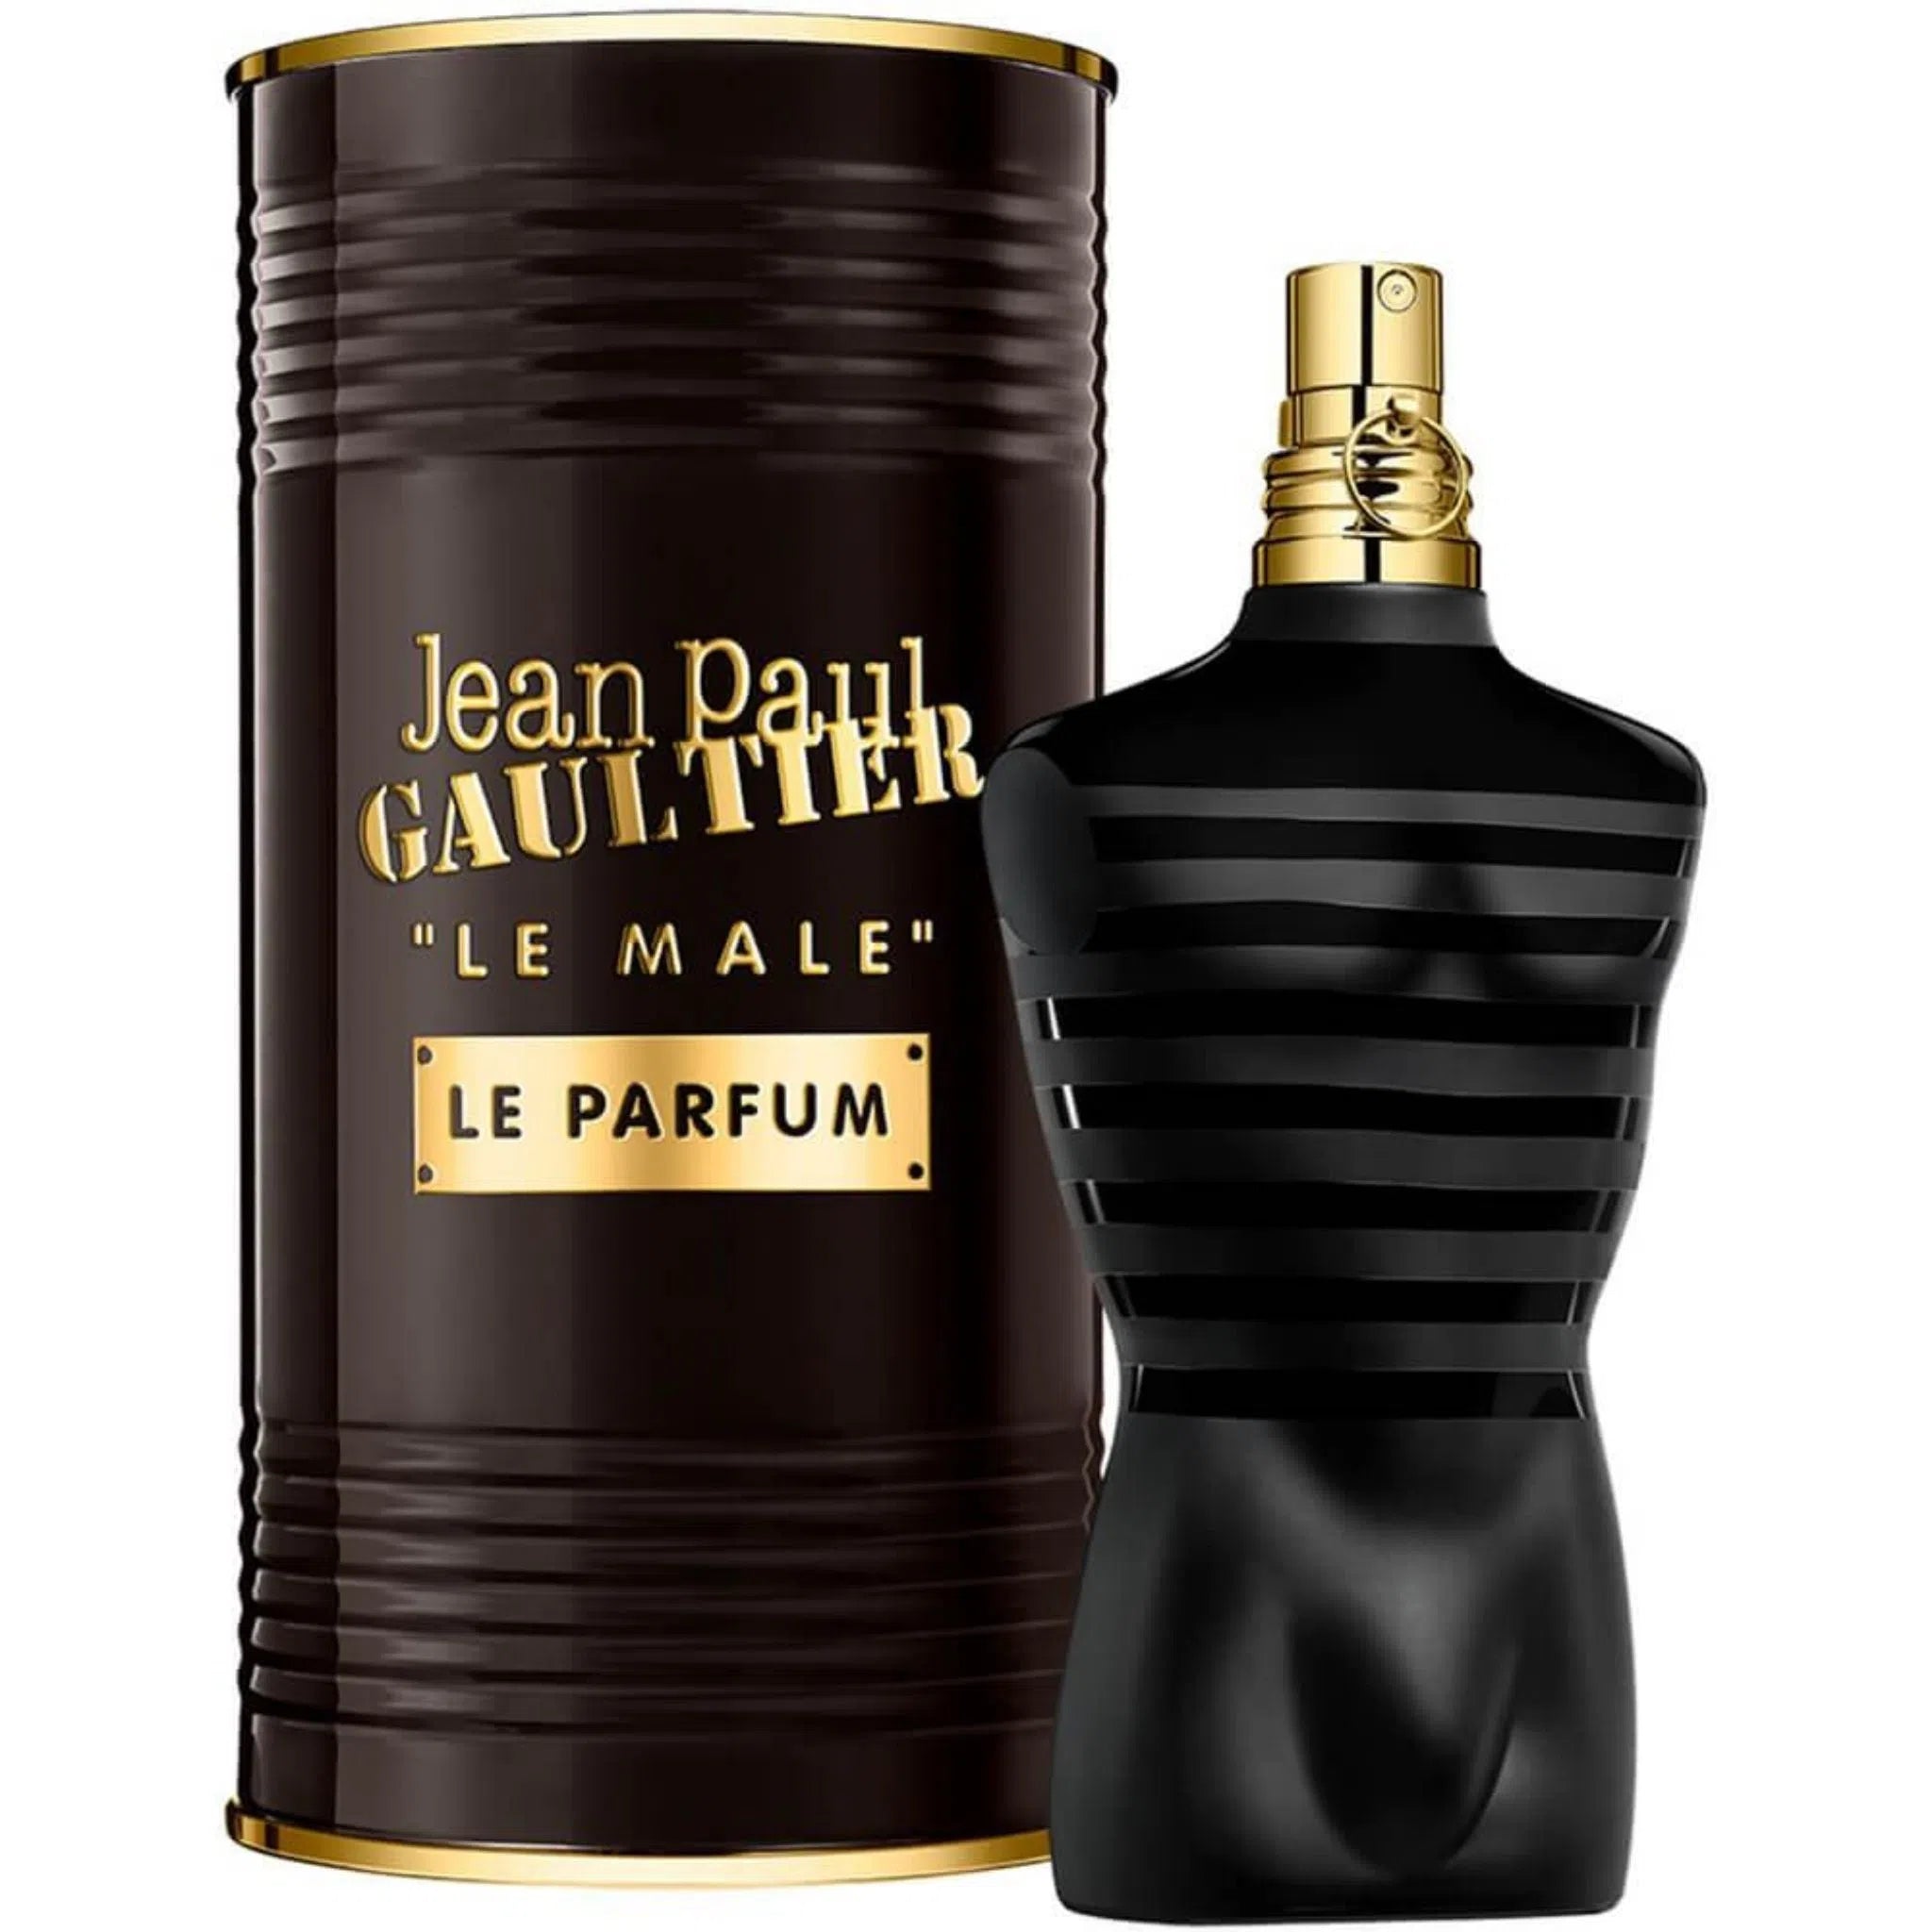 Perfume Jean Paul Gaultier Le Male Le Parfum EDP (M) / 125 ml - 8435415032315- 1 - Prive Perfumes Honduras